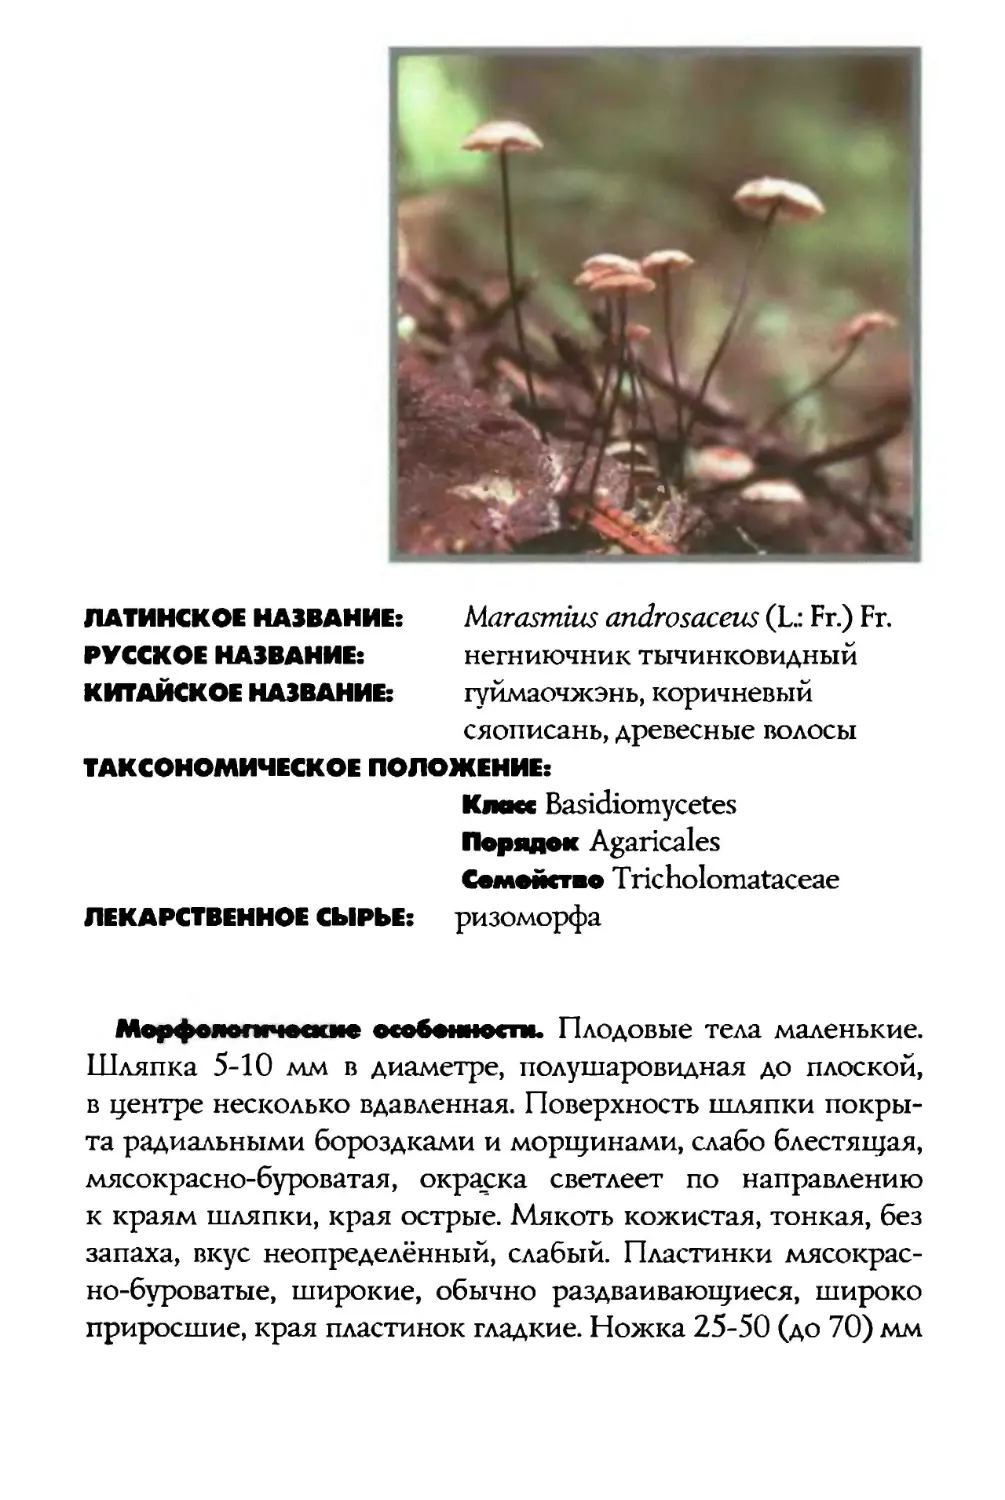 Marasmius androsaceus